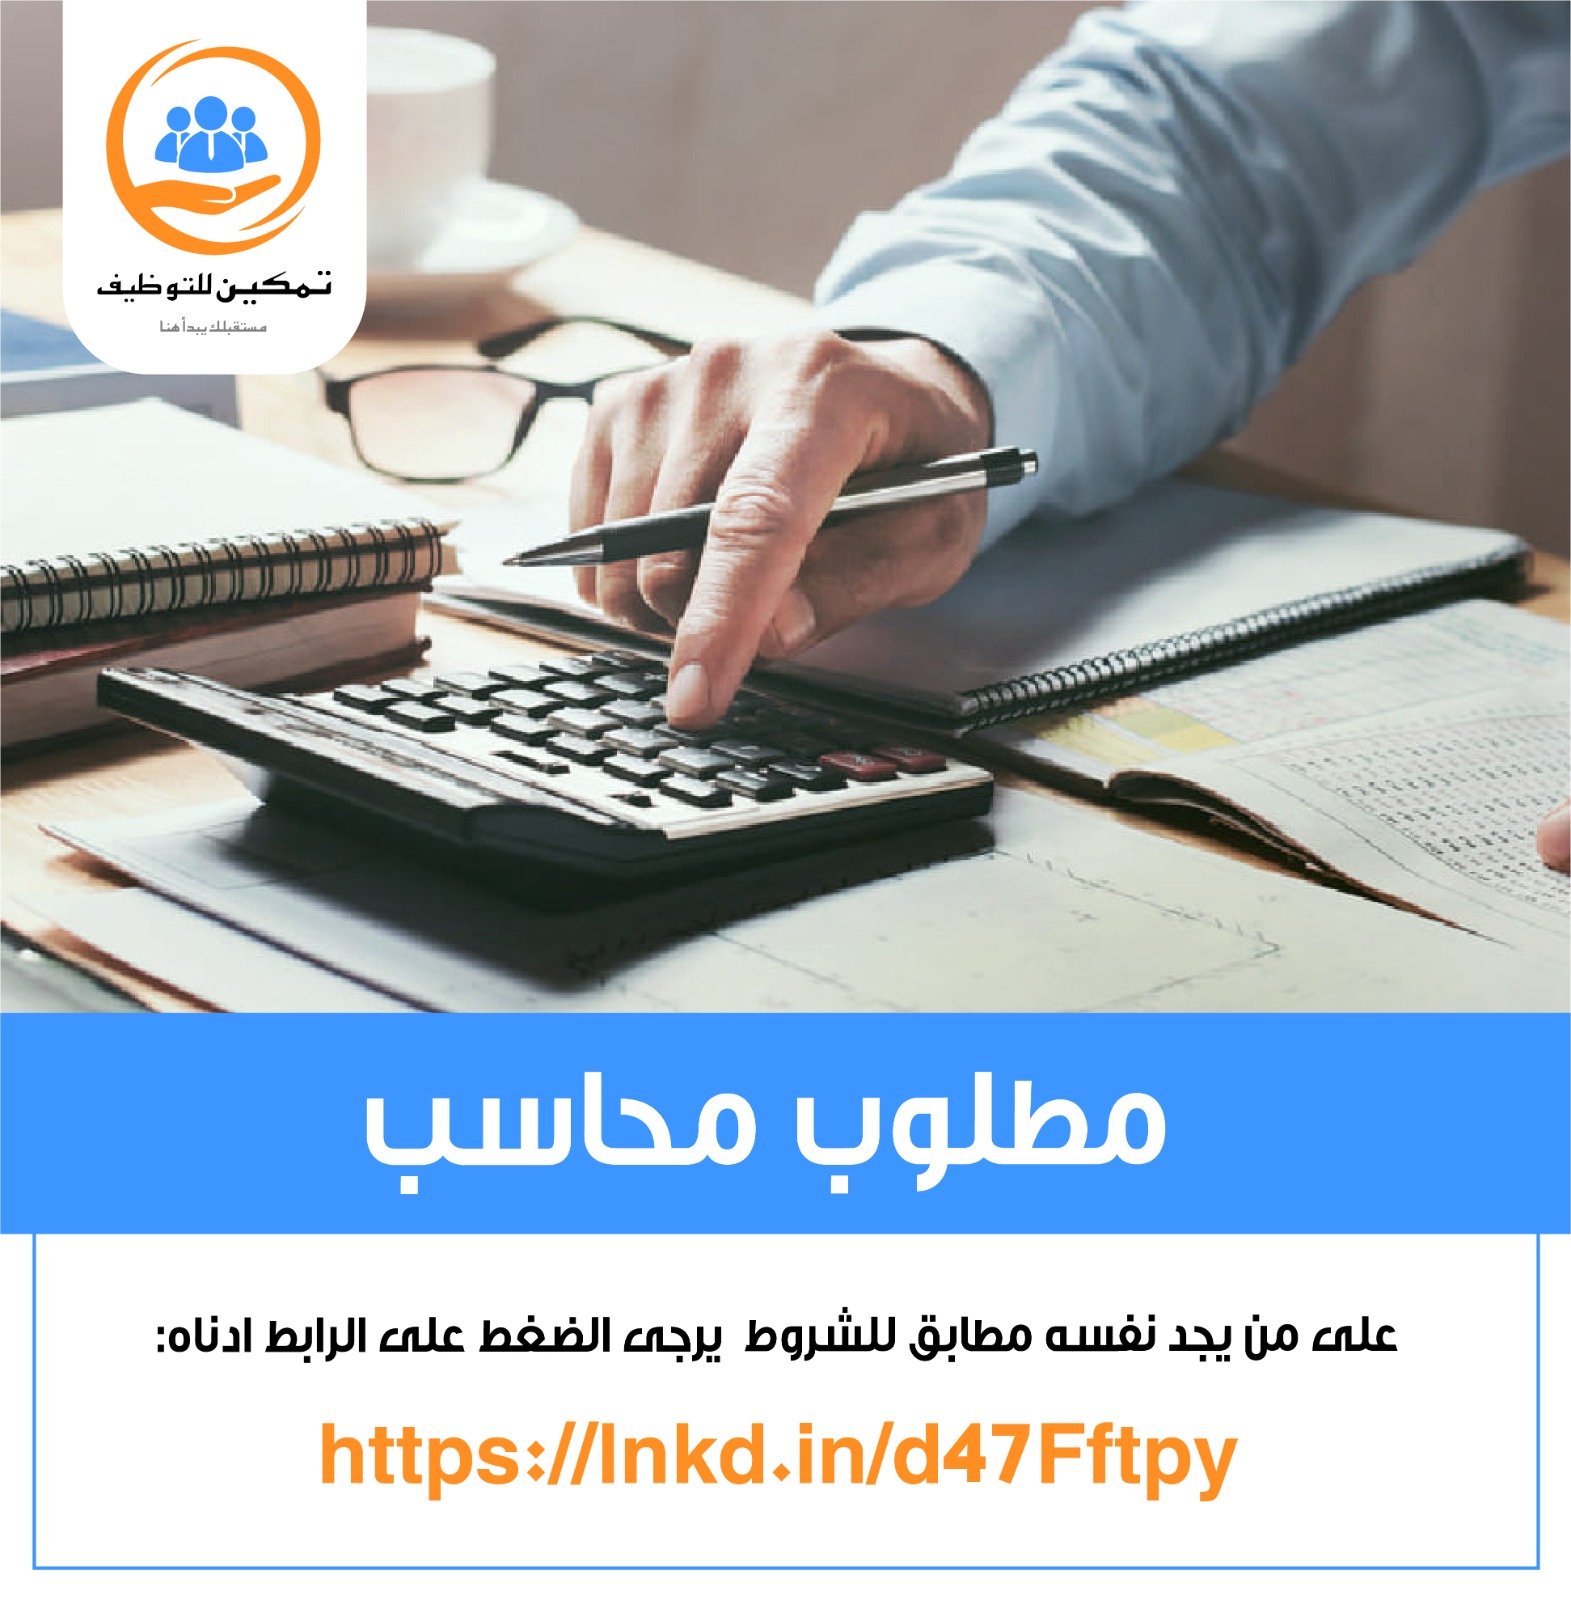 مطلوب محاسب ( ذكر ) للعمل داخل شركة في عمان